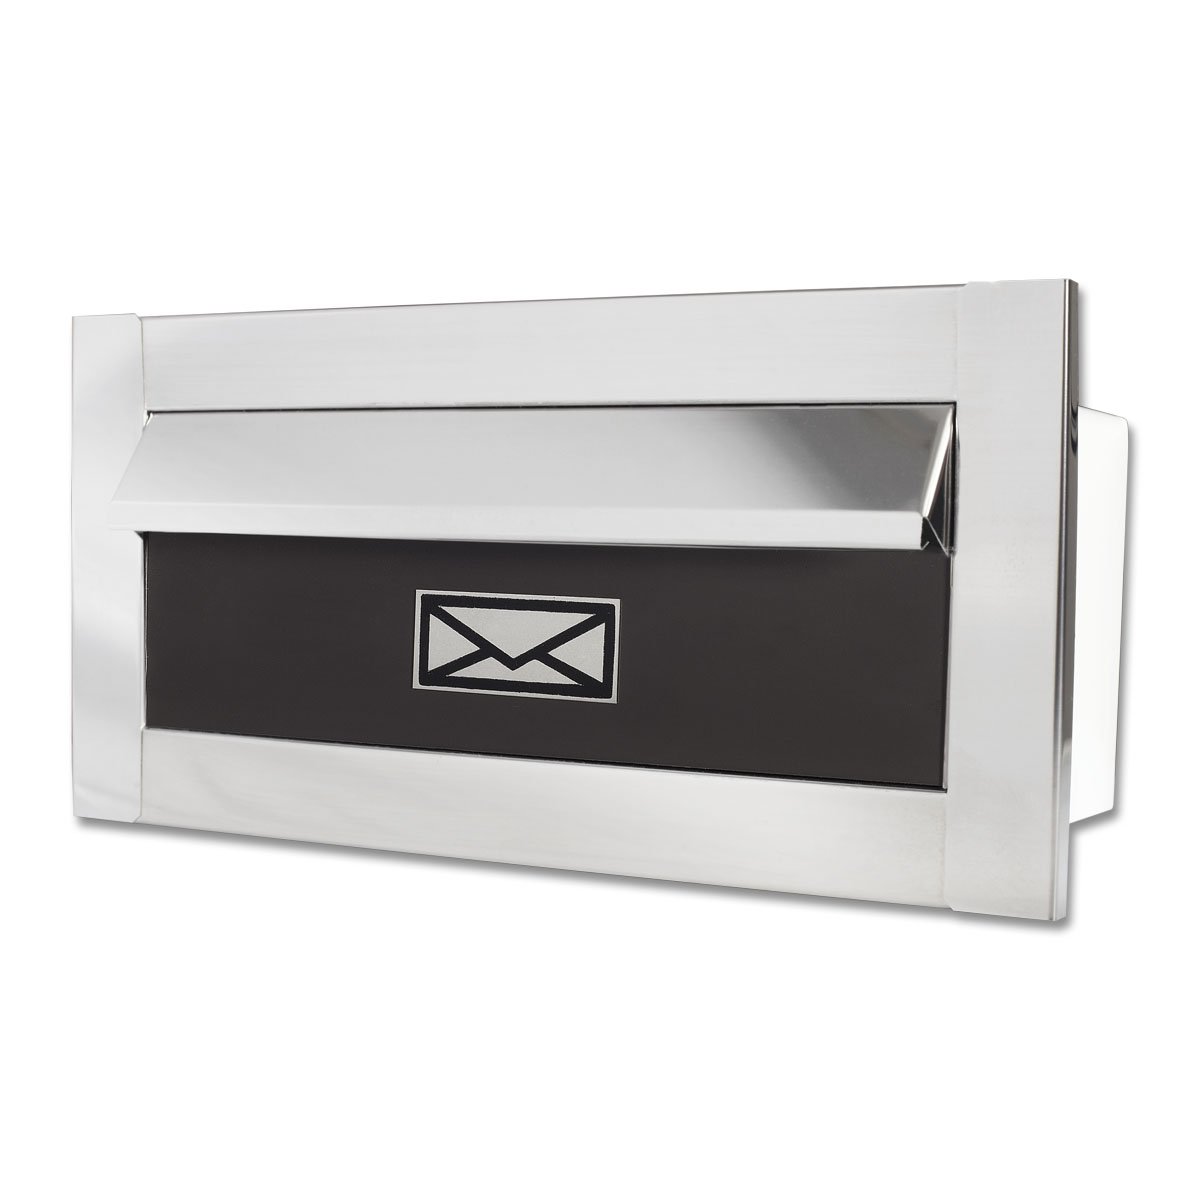 Caixa De Correio carta F Inox polido brilhante espelhado c tarja marrom 20 cm profundidade